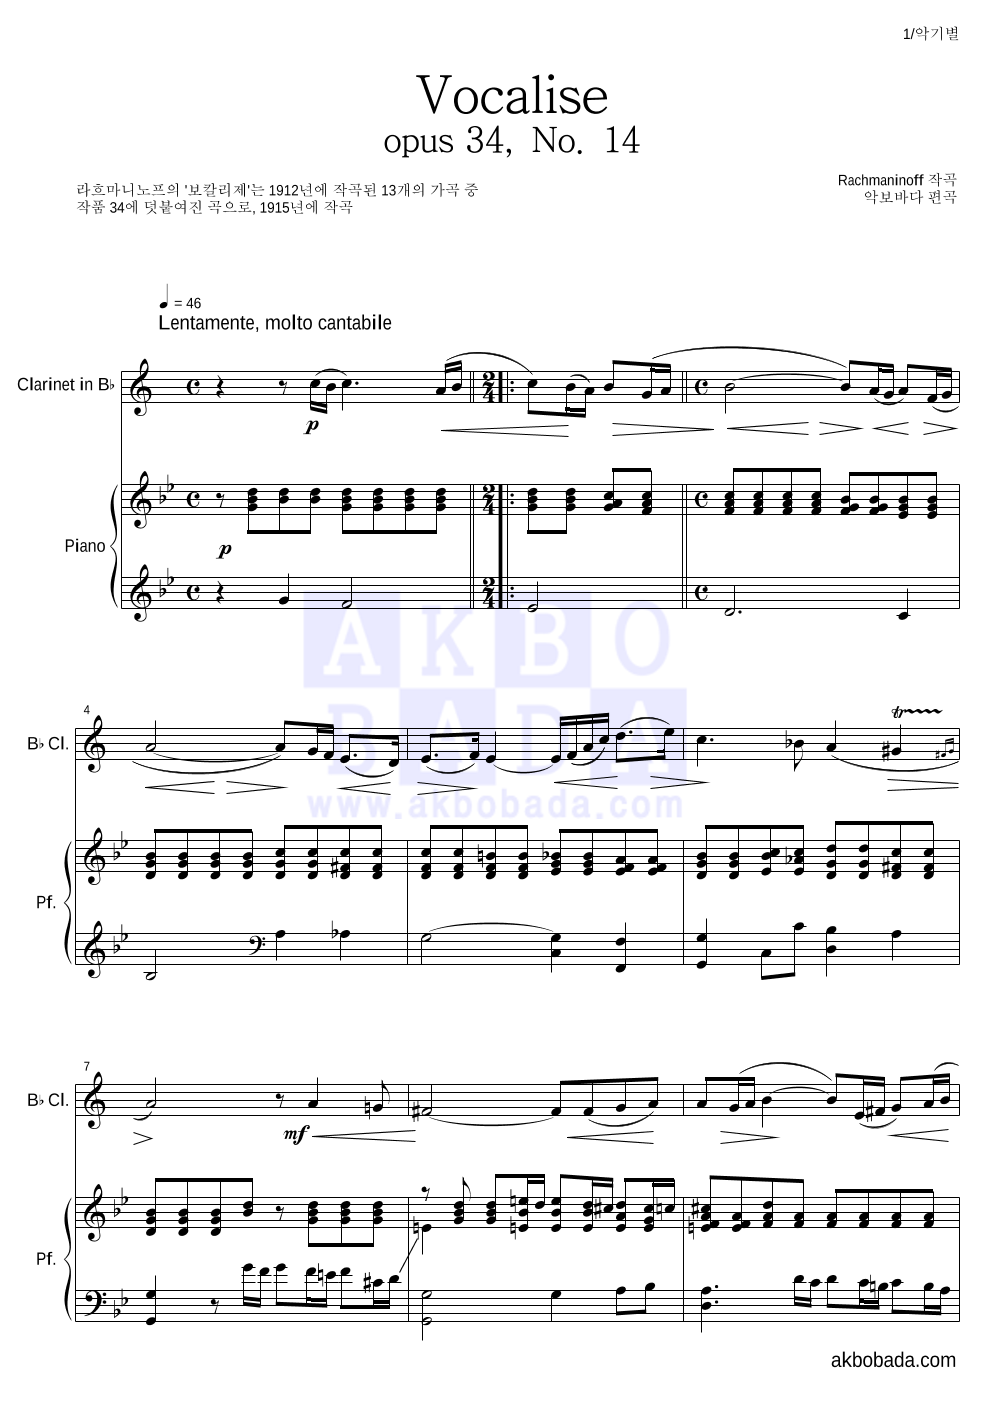 라흐마니노프 - 보칼리제(Vocalise) 클라리넷&피아노 악보 